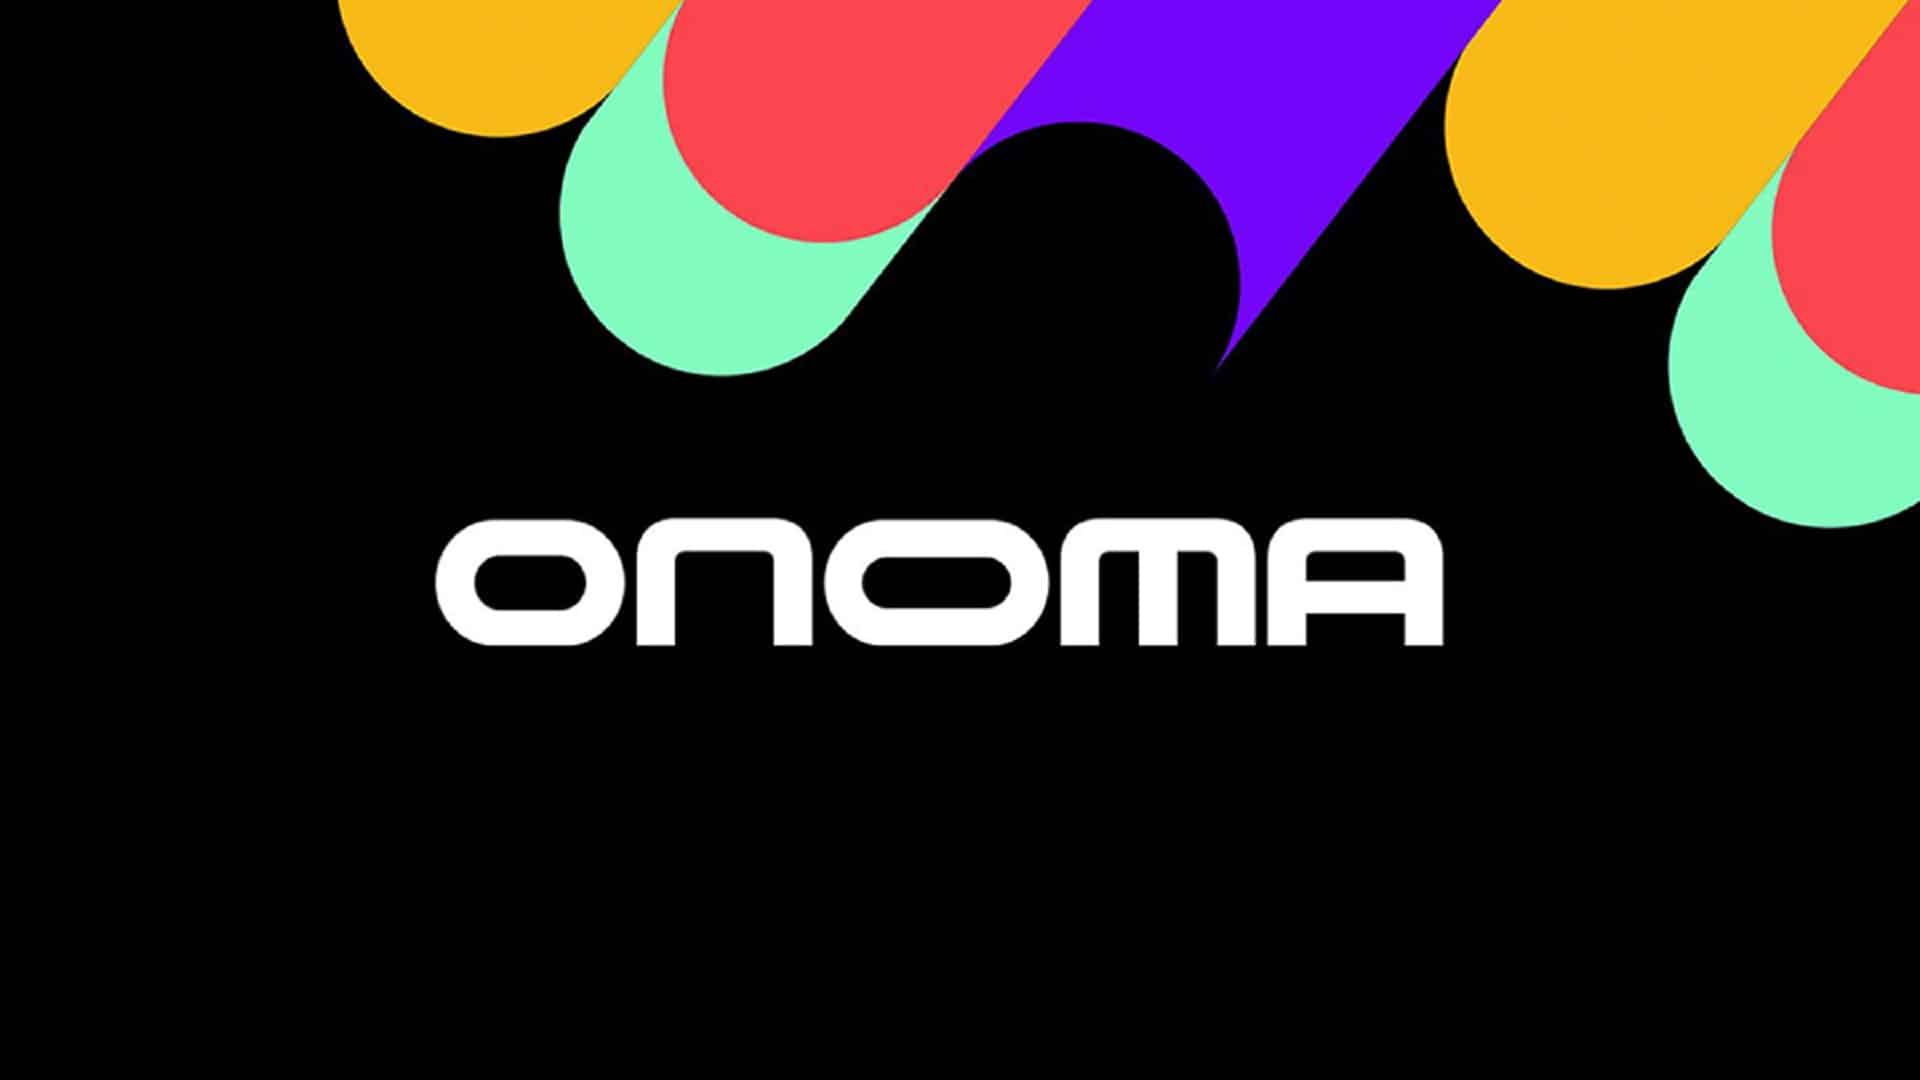 Square Enix Montreal ha cambiado su nombre a Studio Onoma